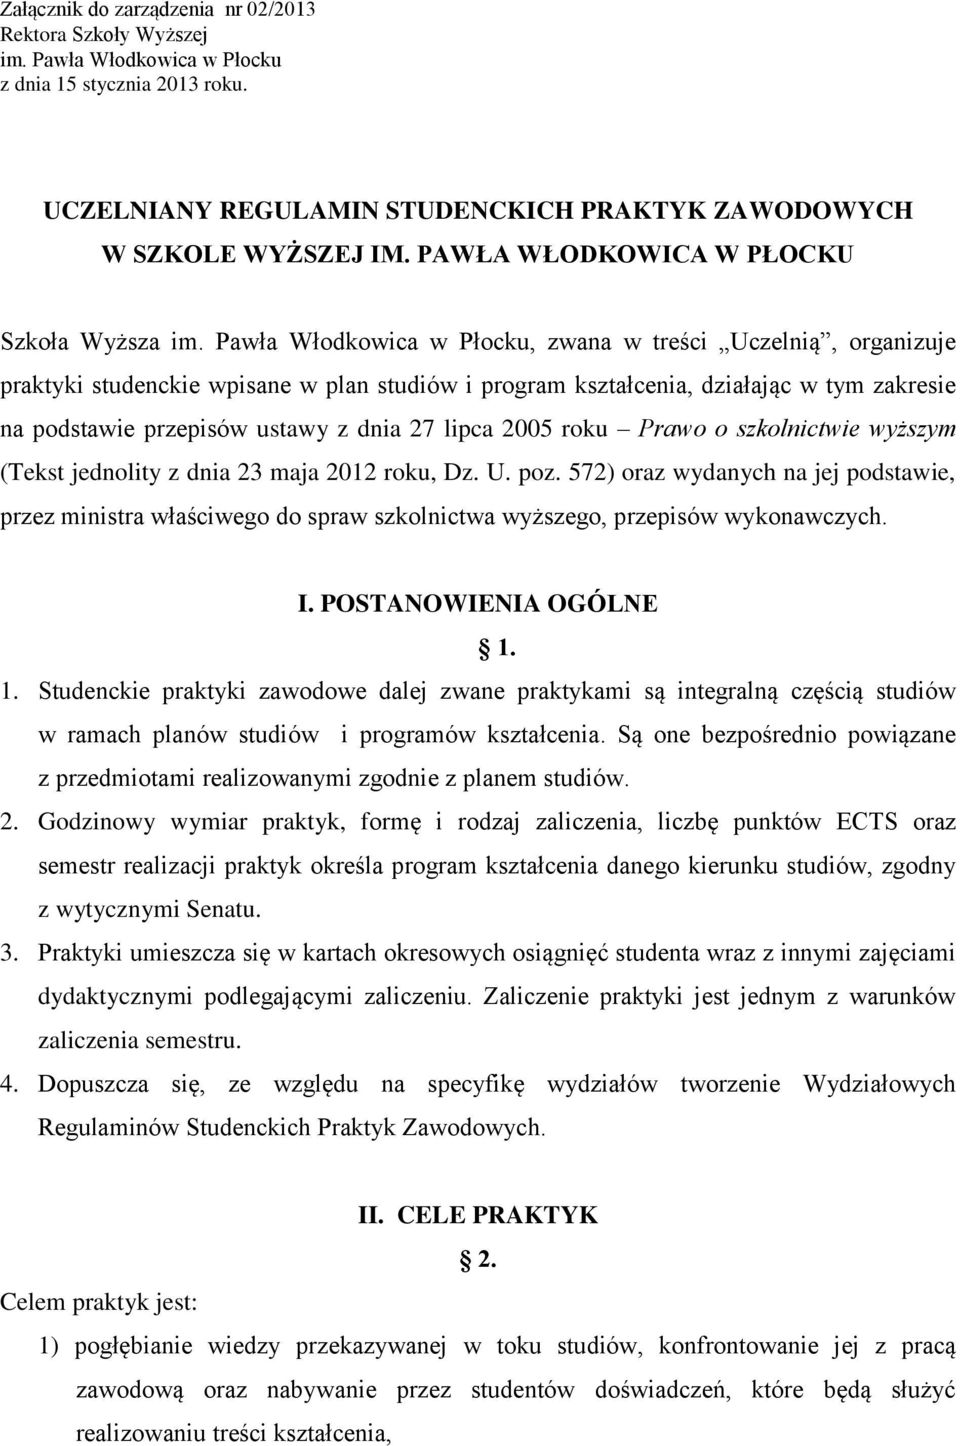 Pawła Włodkowica w Płocku, zwana w treści Uczelnią, organizuje praktyki studenckie wpisane w plan studiów i program kształcenia, działając w tym zakresie na podstawie przepisów ustawy z dnia 27 lipca